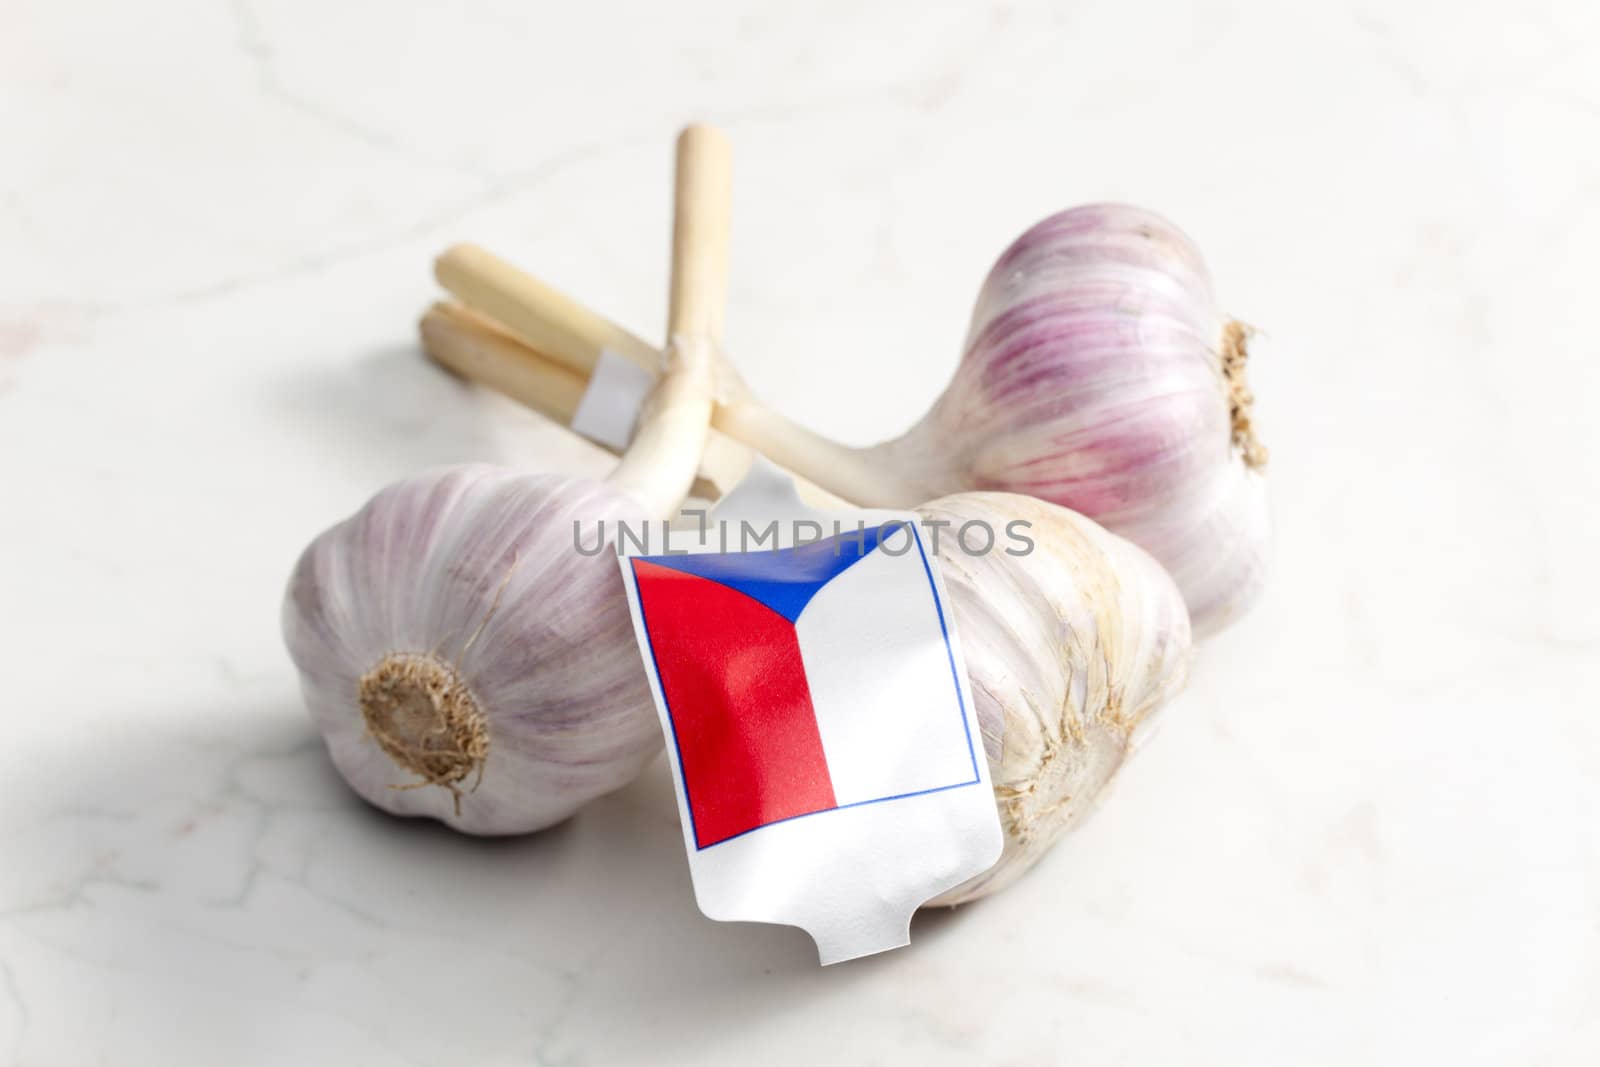 Czech garlic by phbcz